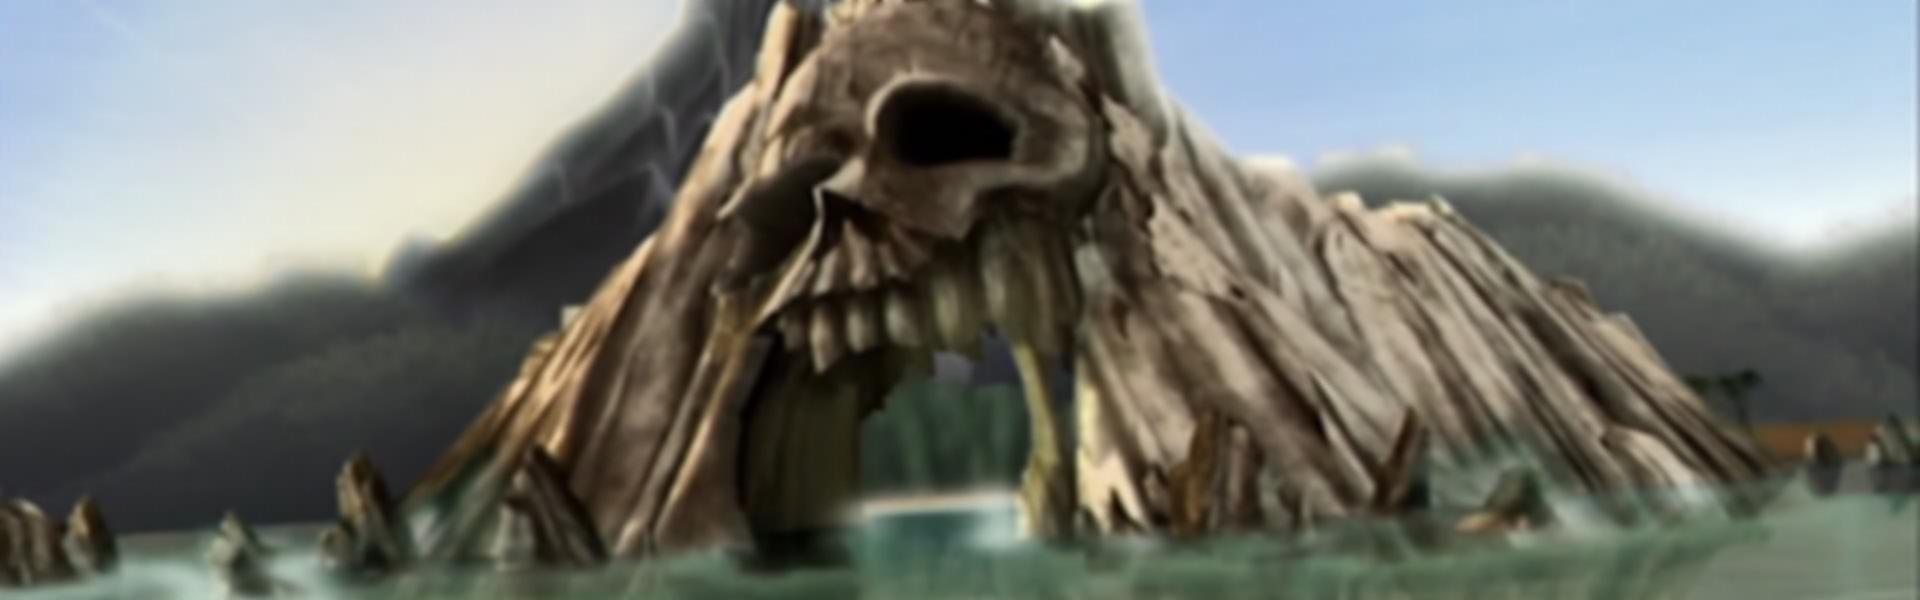 Monster High: A Fuga da Ilha Esqueleto - Curta-metragem - AdoroCinema